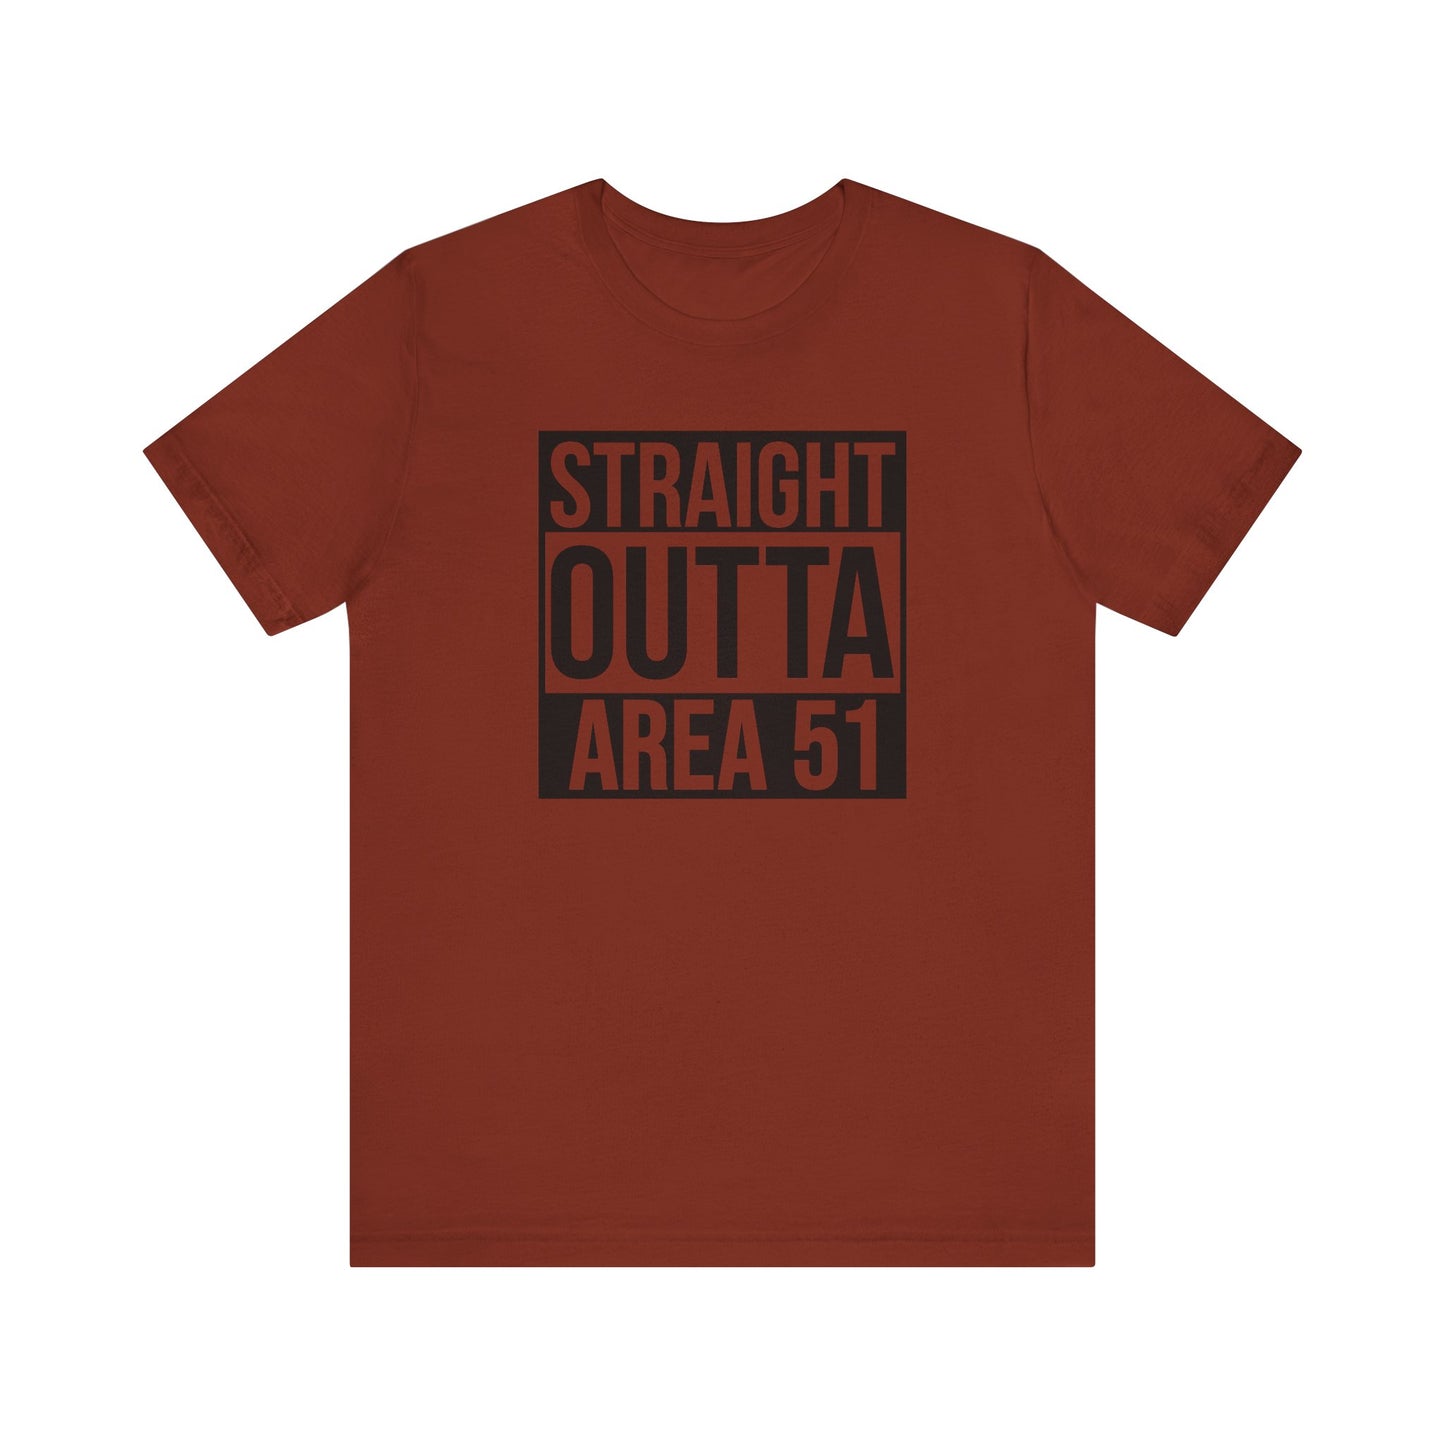 Area 51 T-Shirt For Alien Base T Shirt For Groom Lake TShirt